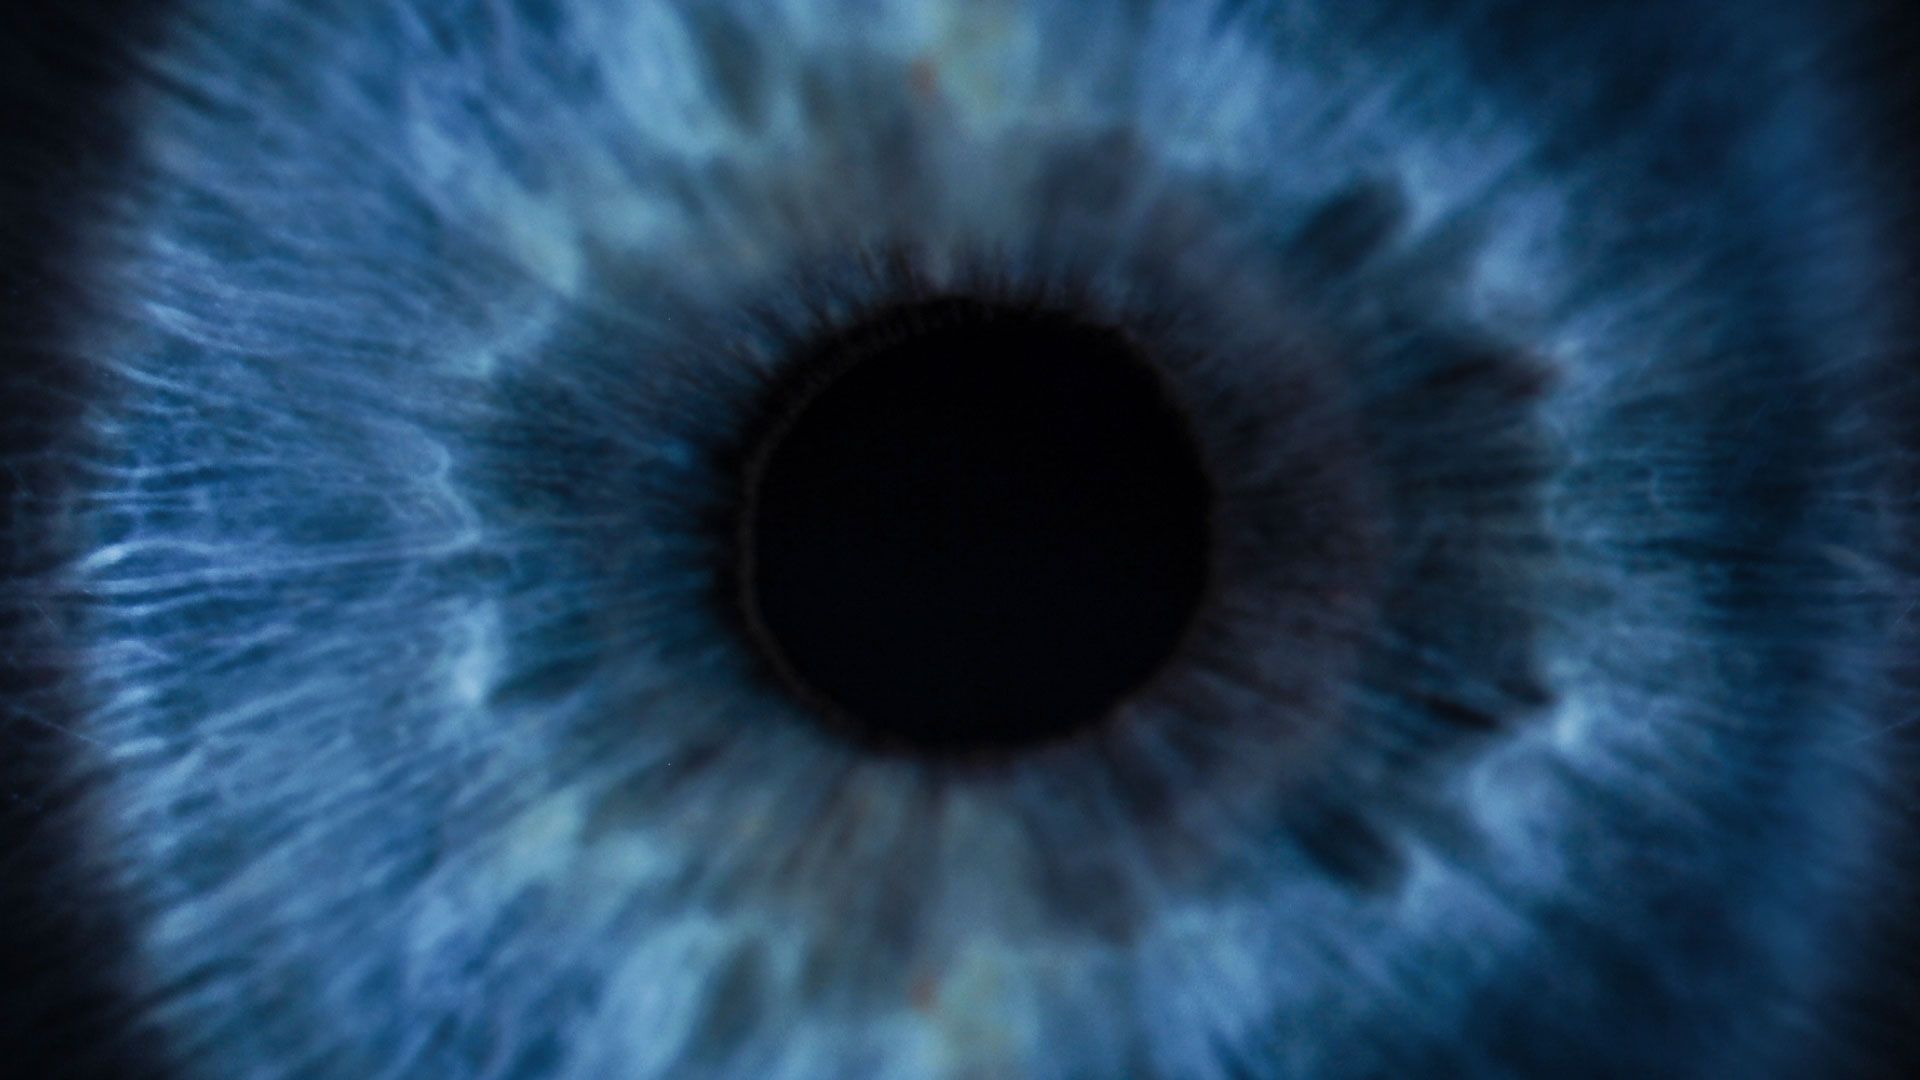 Nahaufnahme der Iris eines menschlichen Auges